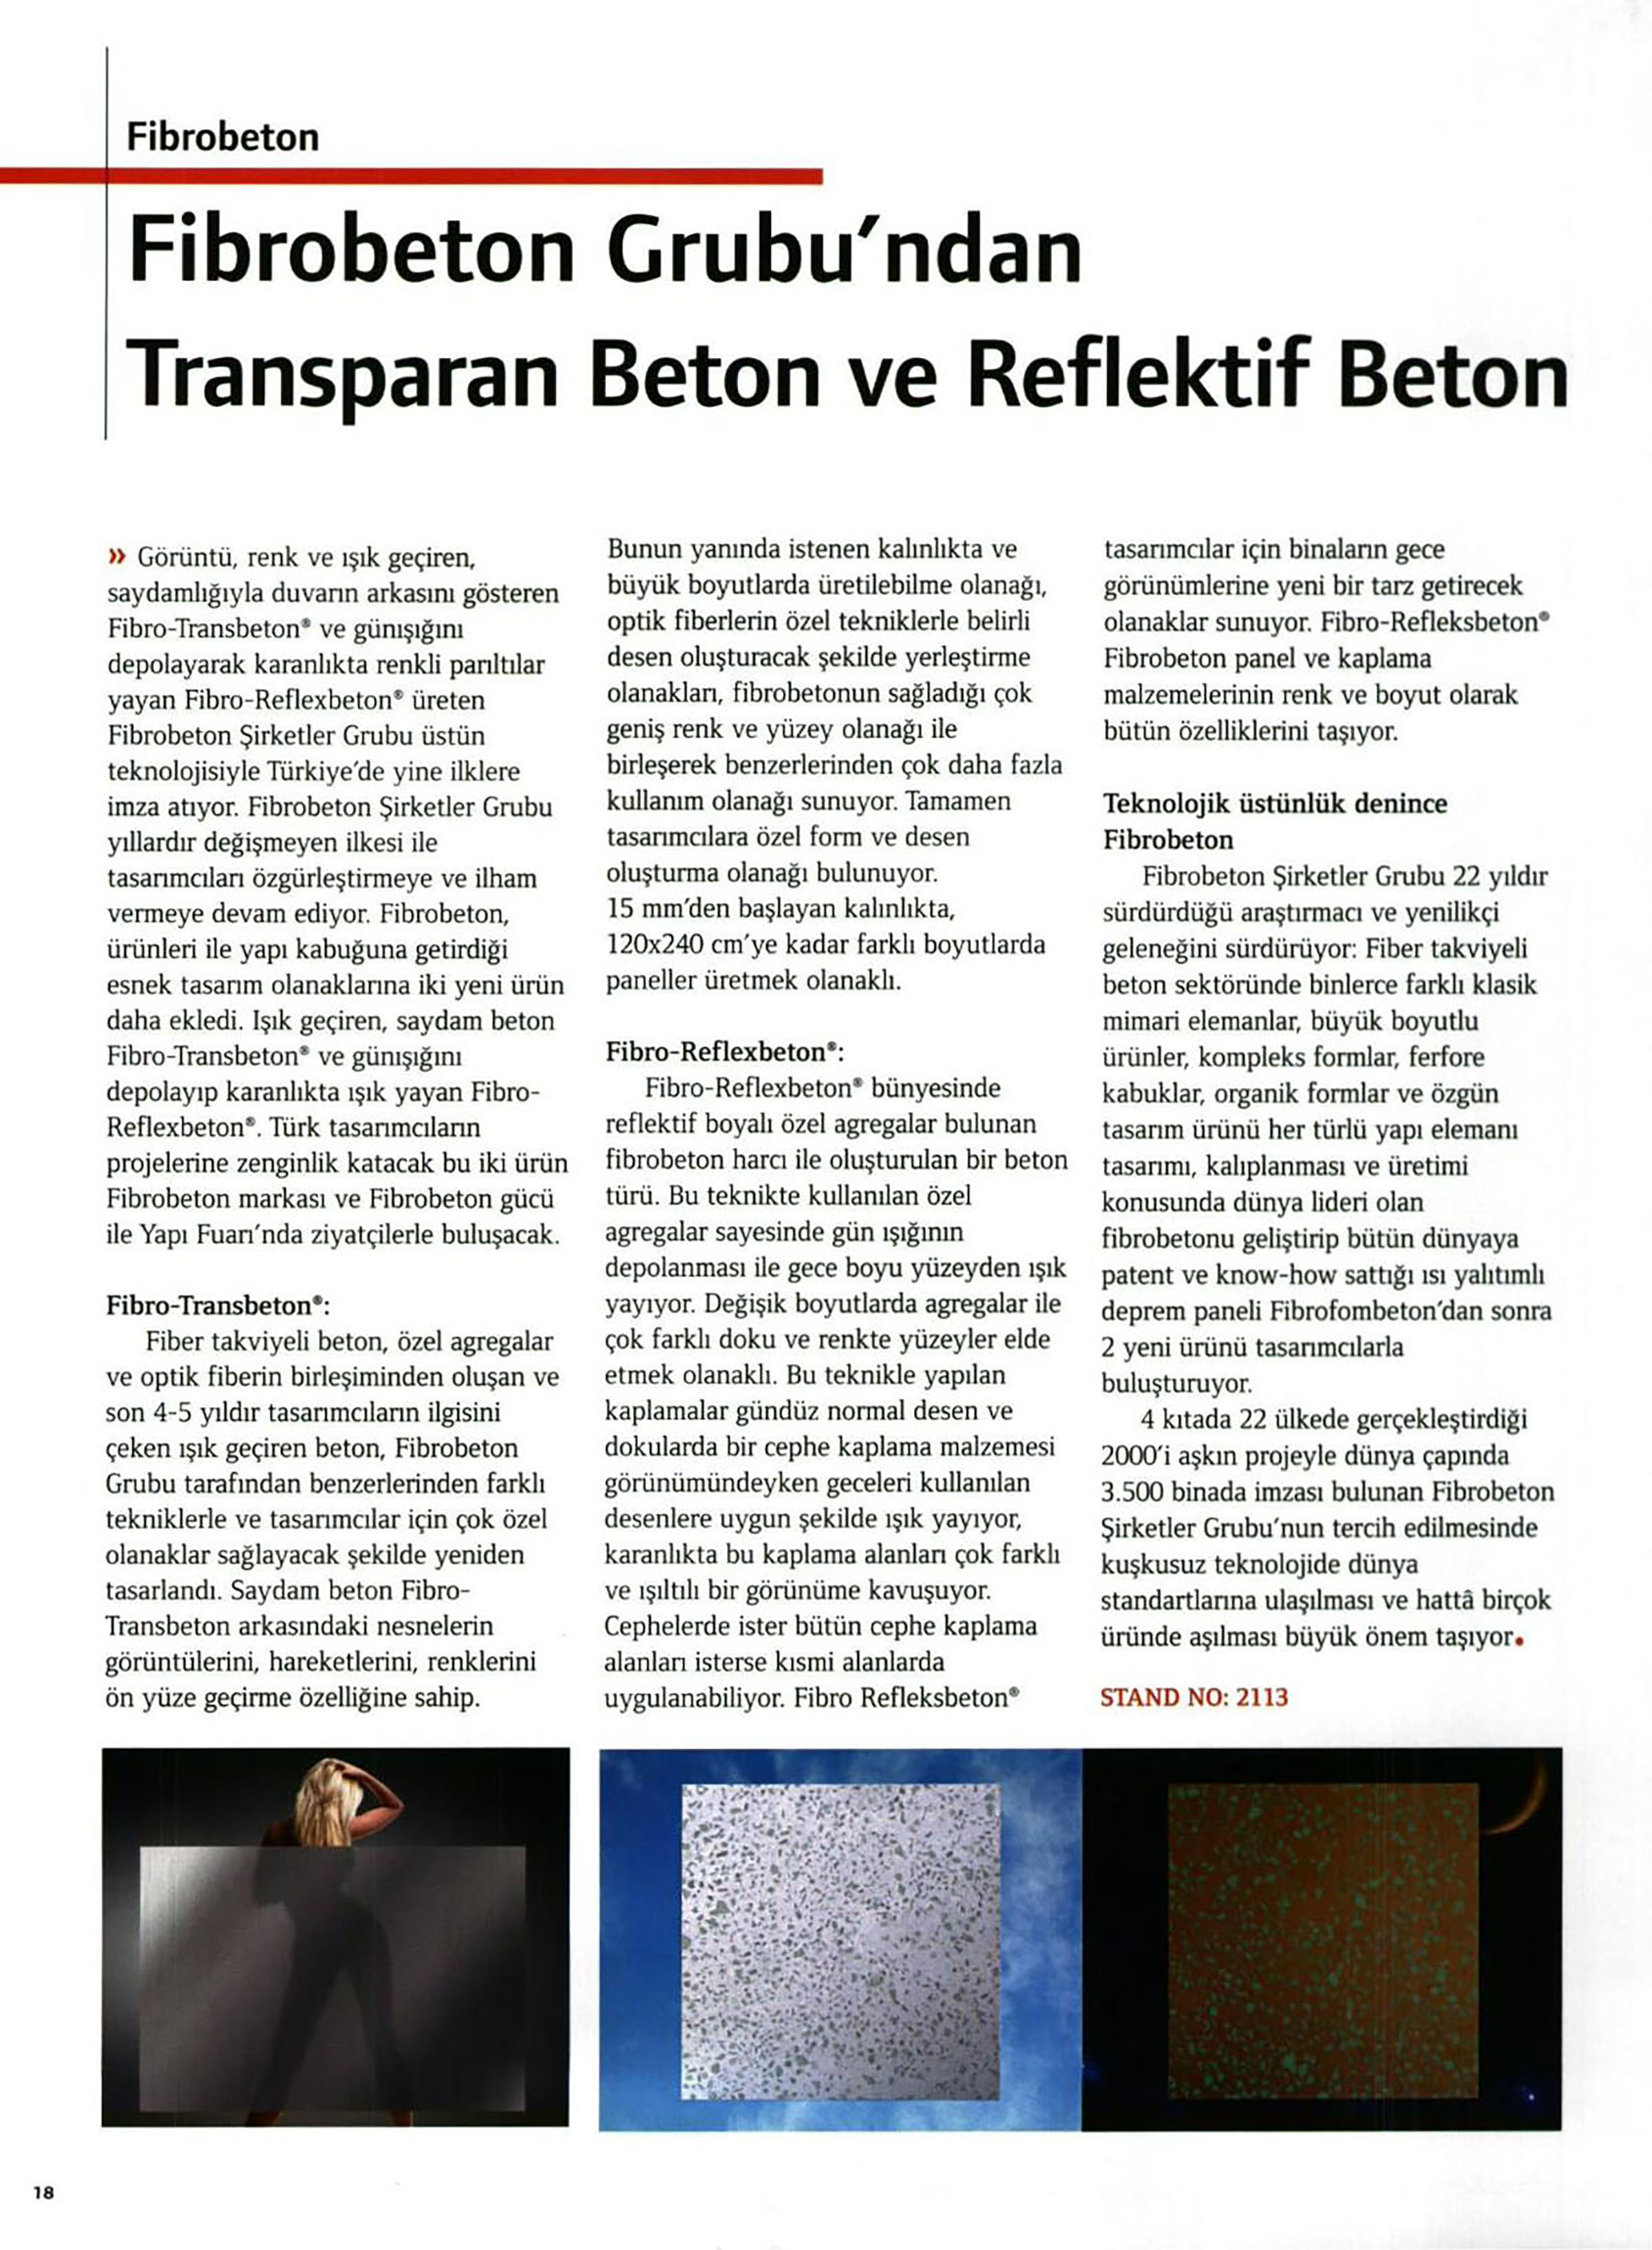 Fibro-Reflexbeton & Fibro-Transbeton